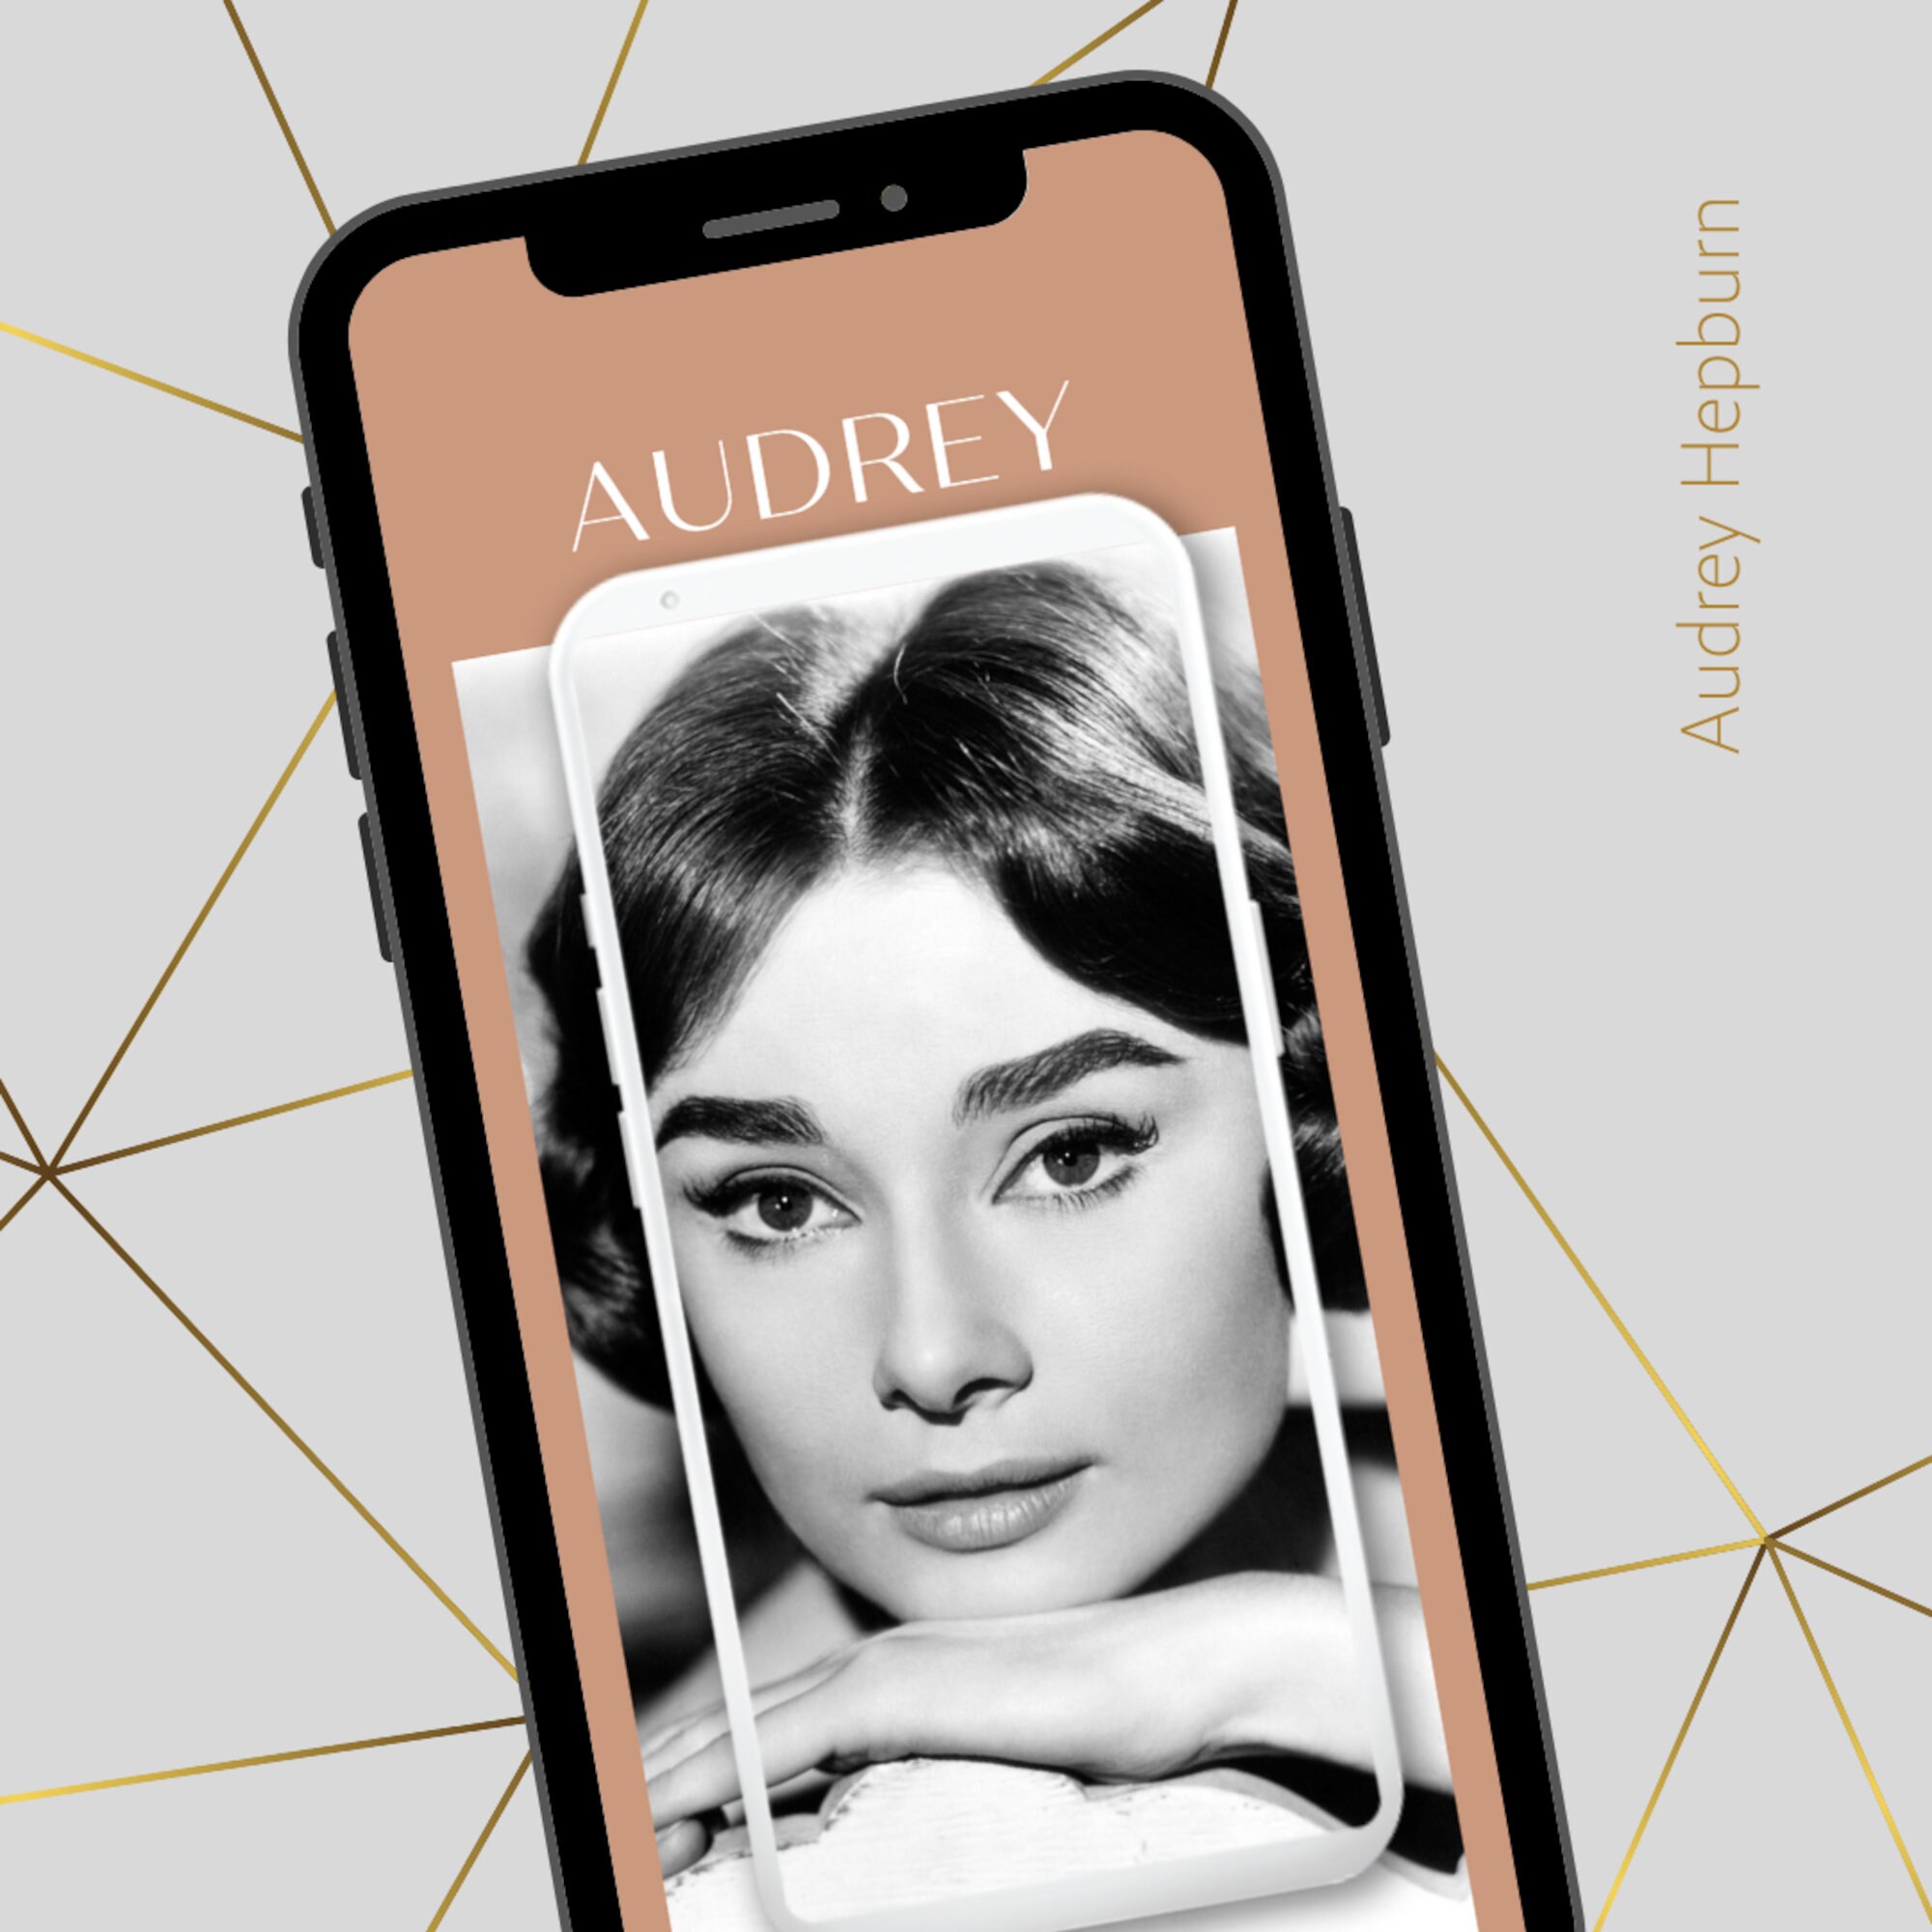 Wallpaper ID: 440375 / Celebrity Audrey Hepburn Phone Wallpaper, , 750x1334  free download